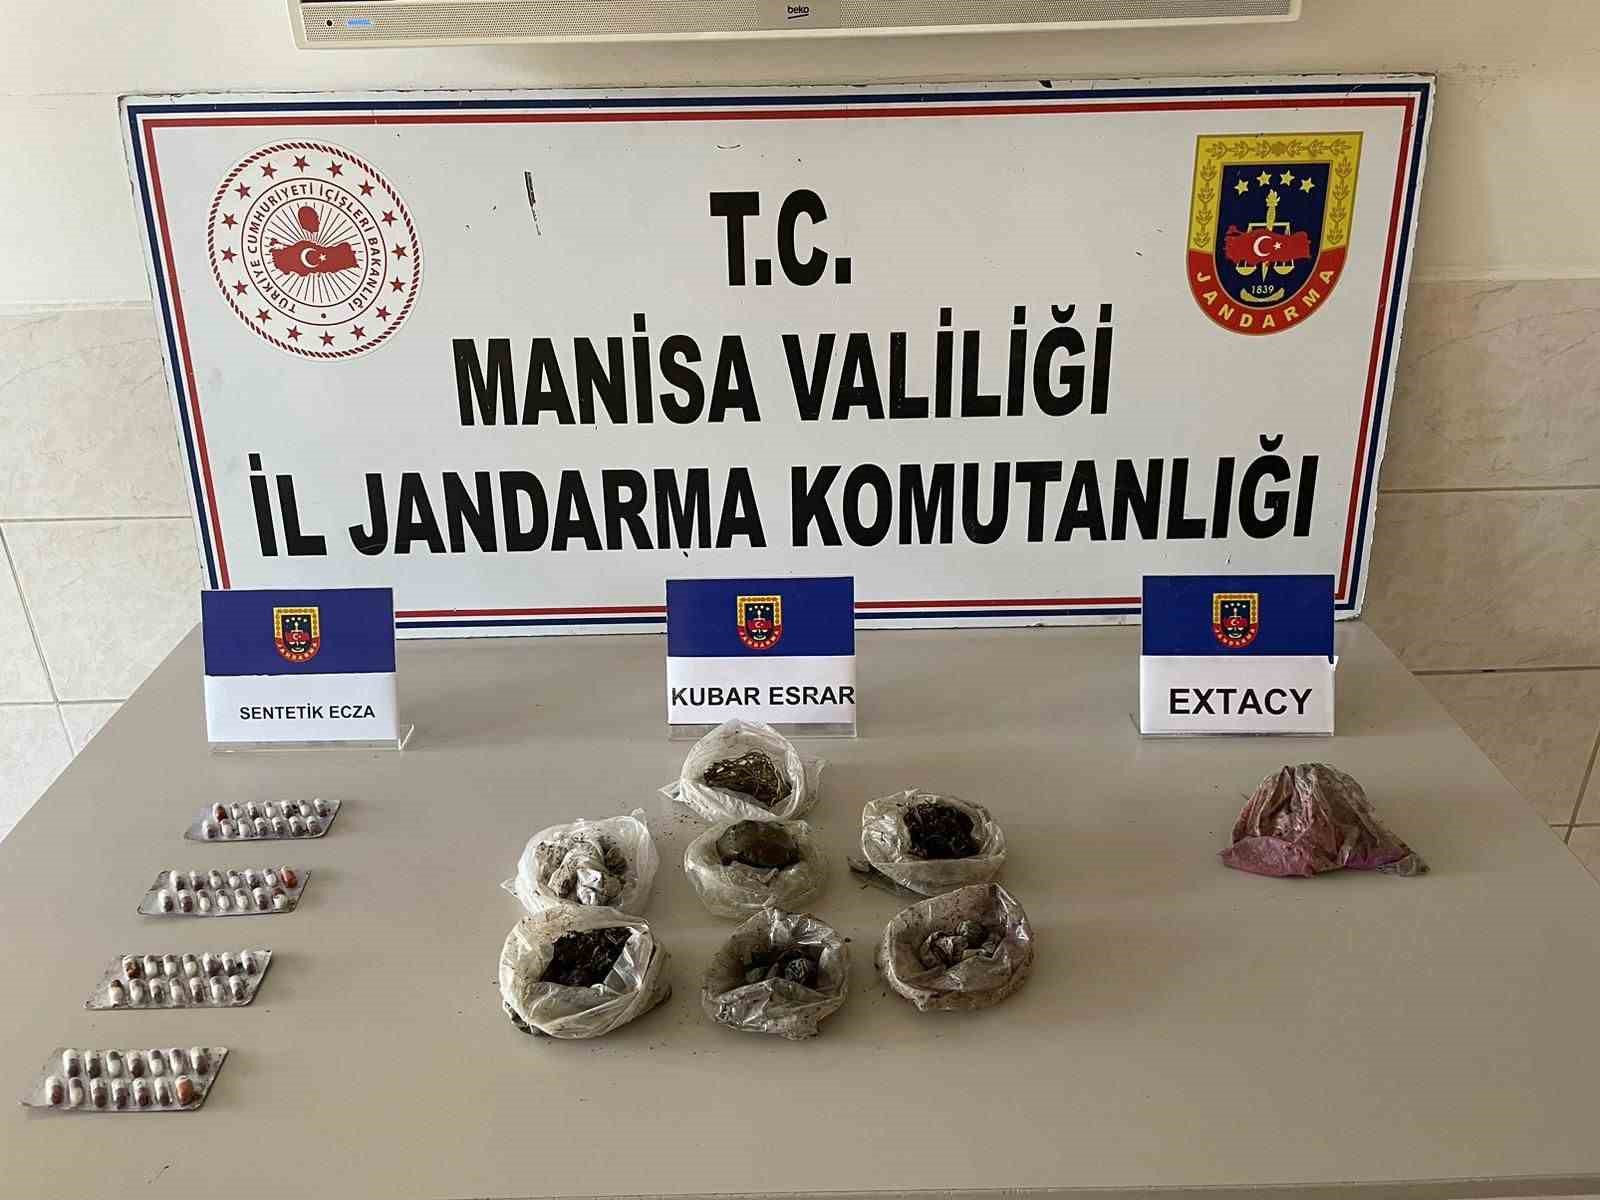 Manisa’da jandarmadan uyuşturucu tacirlerine darbe: 2 tutuklama
